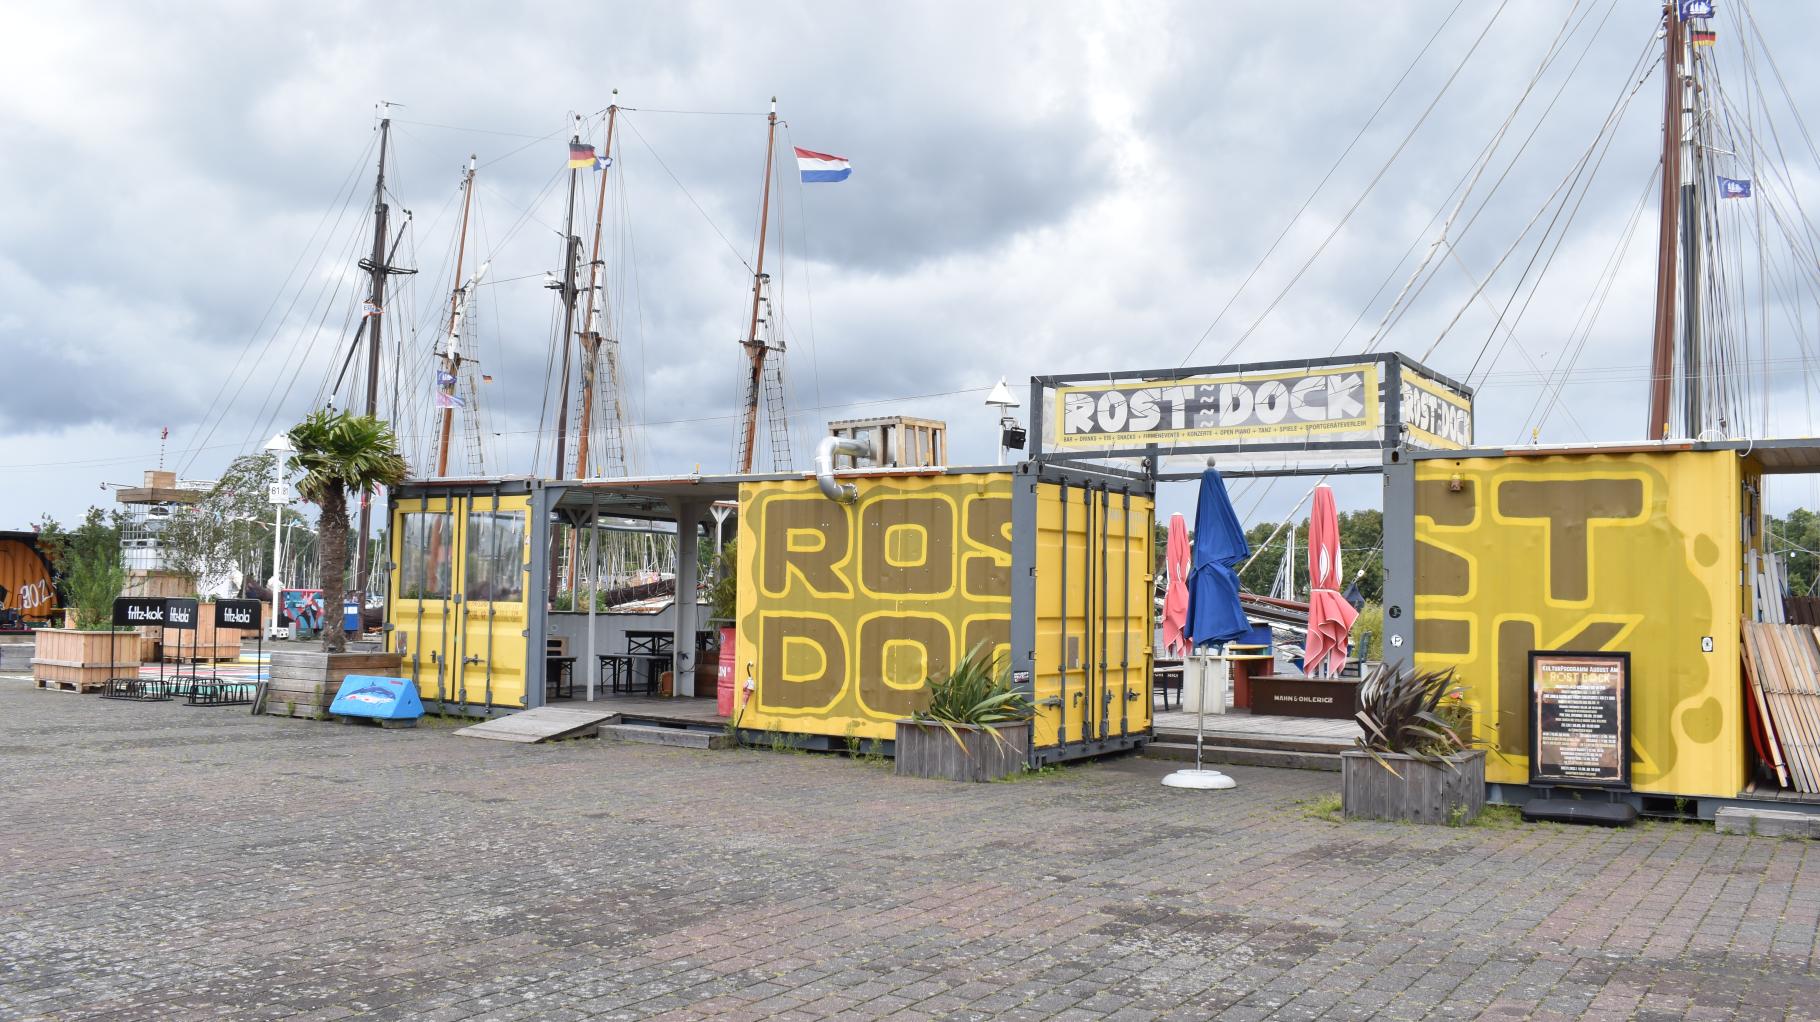 Hanse Sail in Rostock soll 2023 nachhaltiger werden